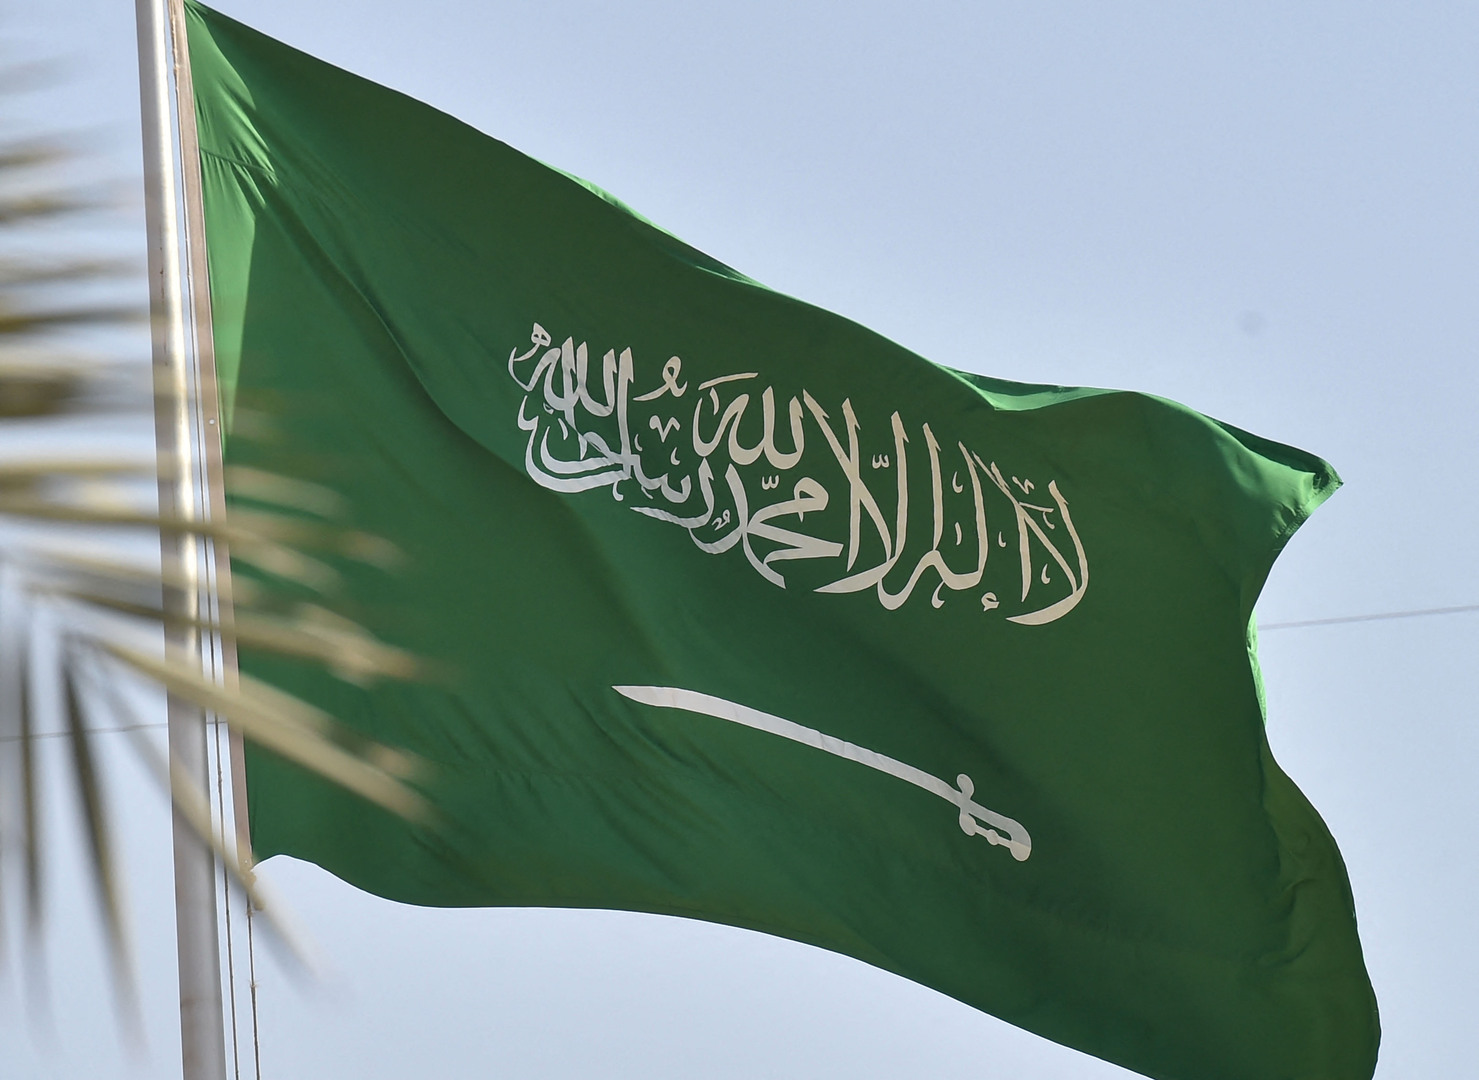 السعودية.. وزارة الدفاع تعلن إعدام اثنين من منتسبيها بتهمة الخيانة